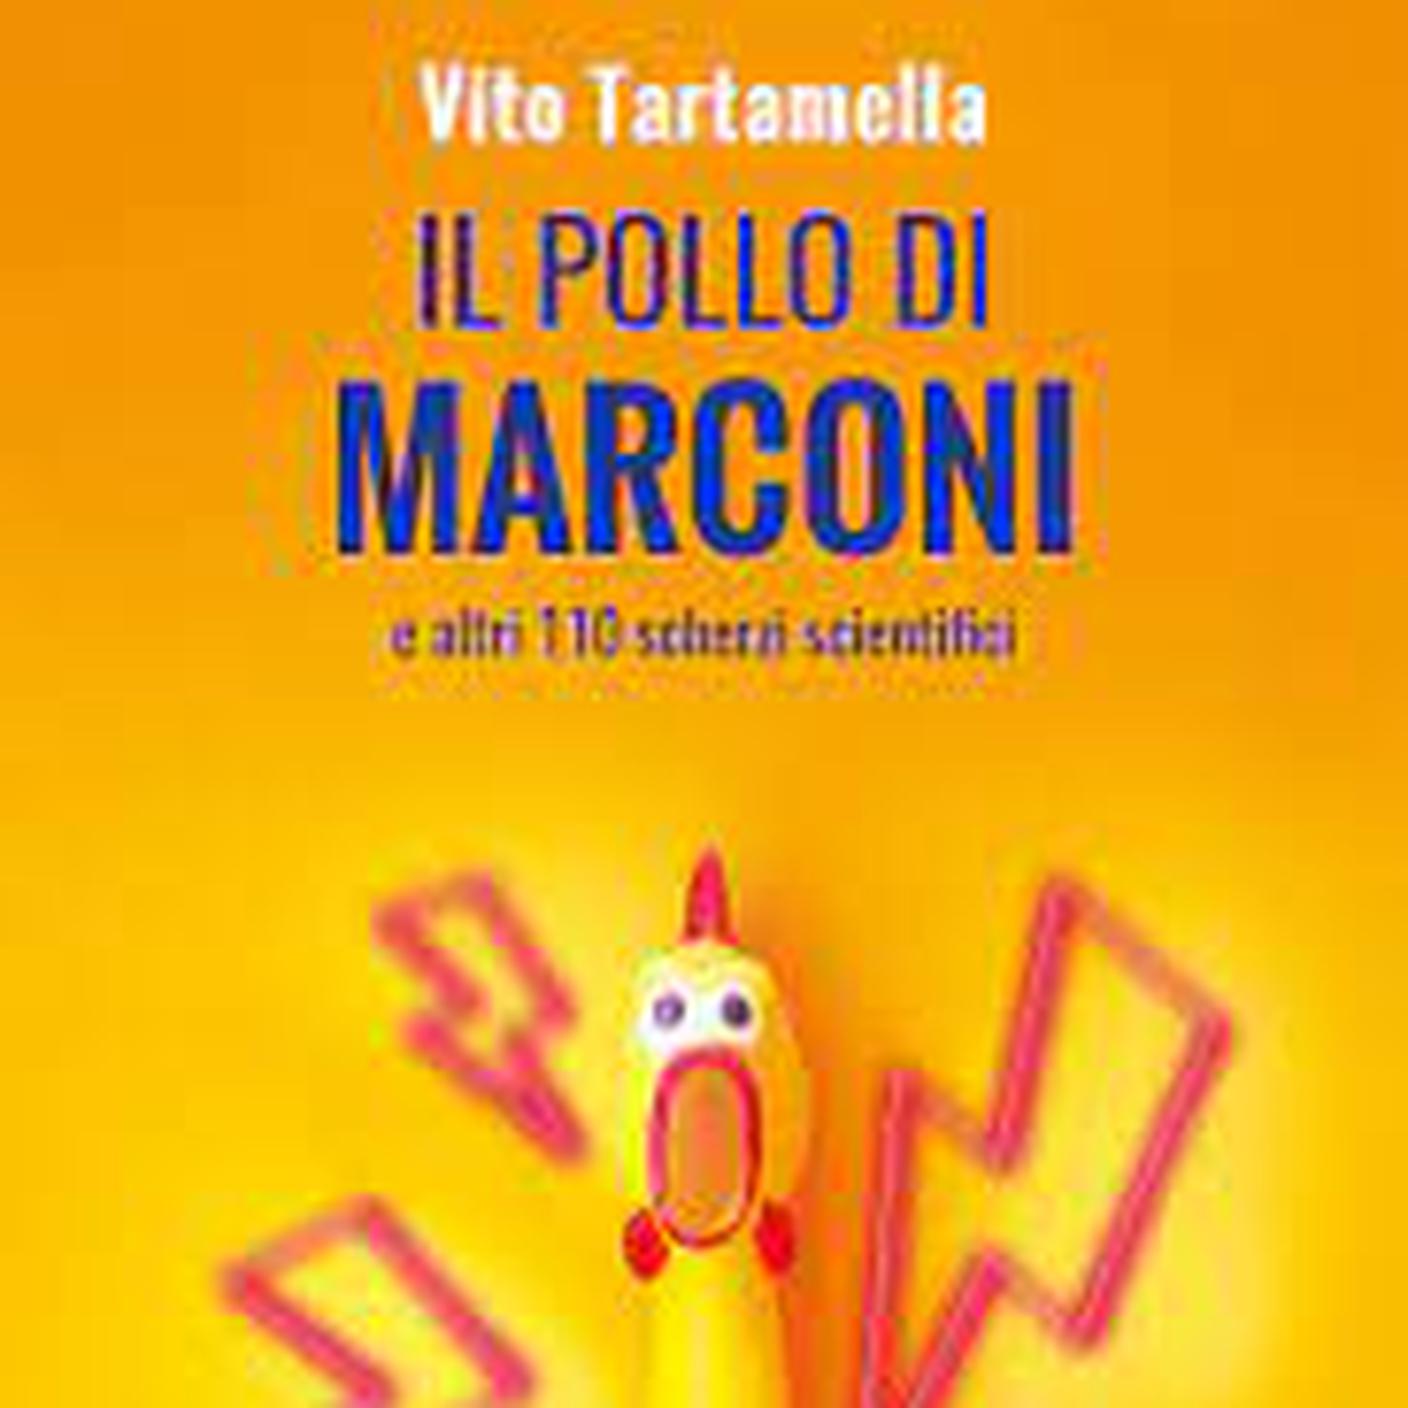 “Il pollo di Marconi e altri 110 scherzi scientifici” di Vito Tartamella, Dedalo (dettaglio di copertina)